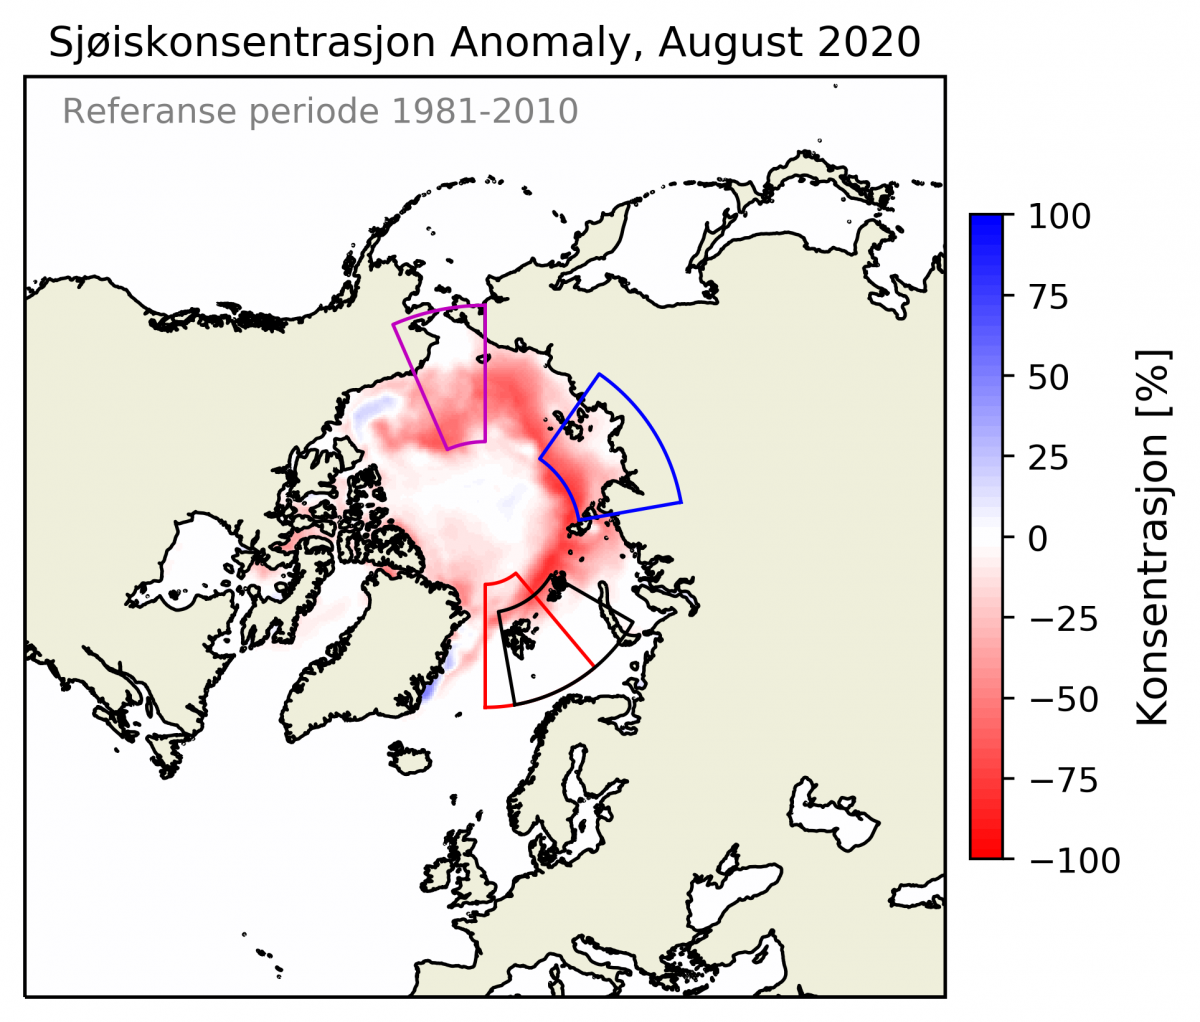 Anomali av sjøiskonsentrasjon i Arktis August 2020